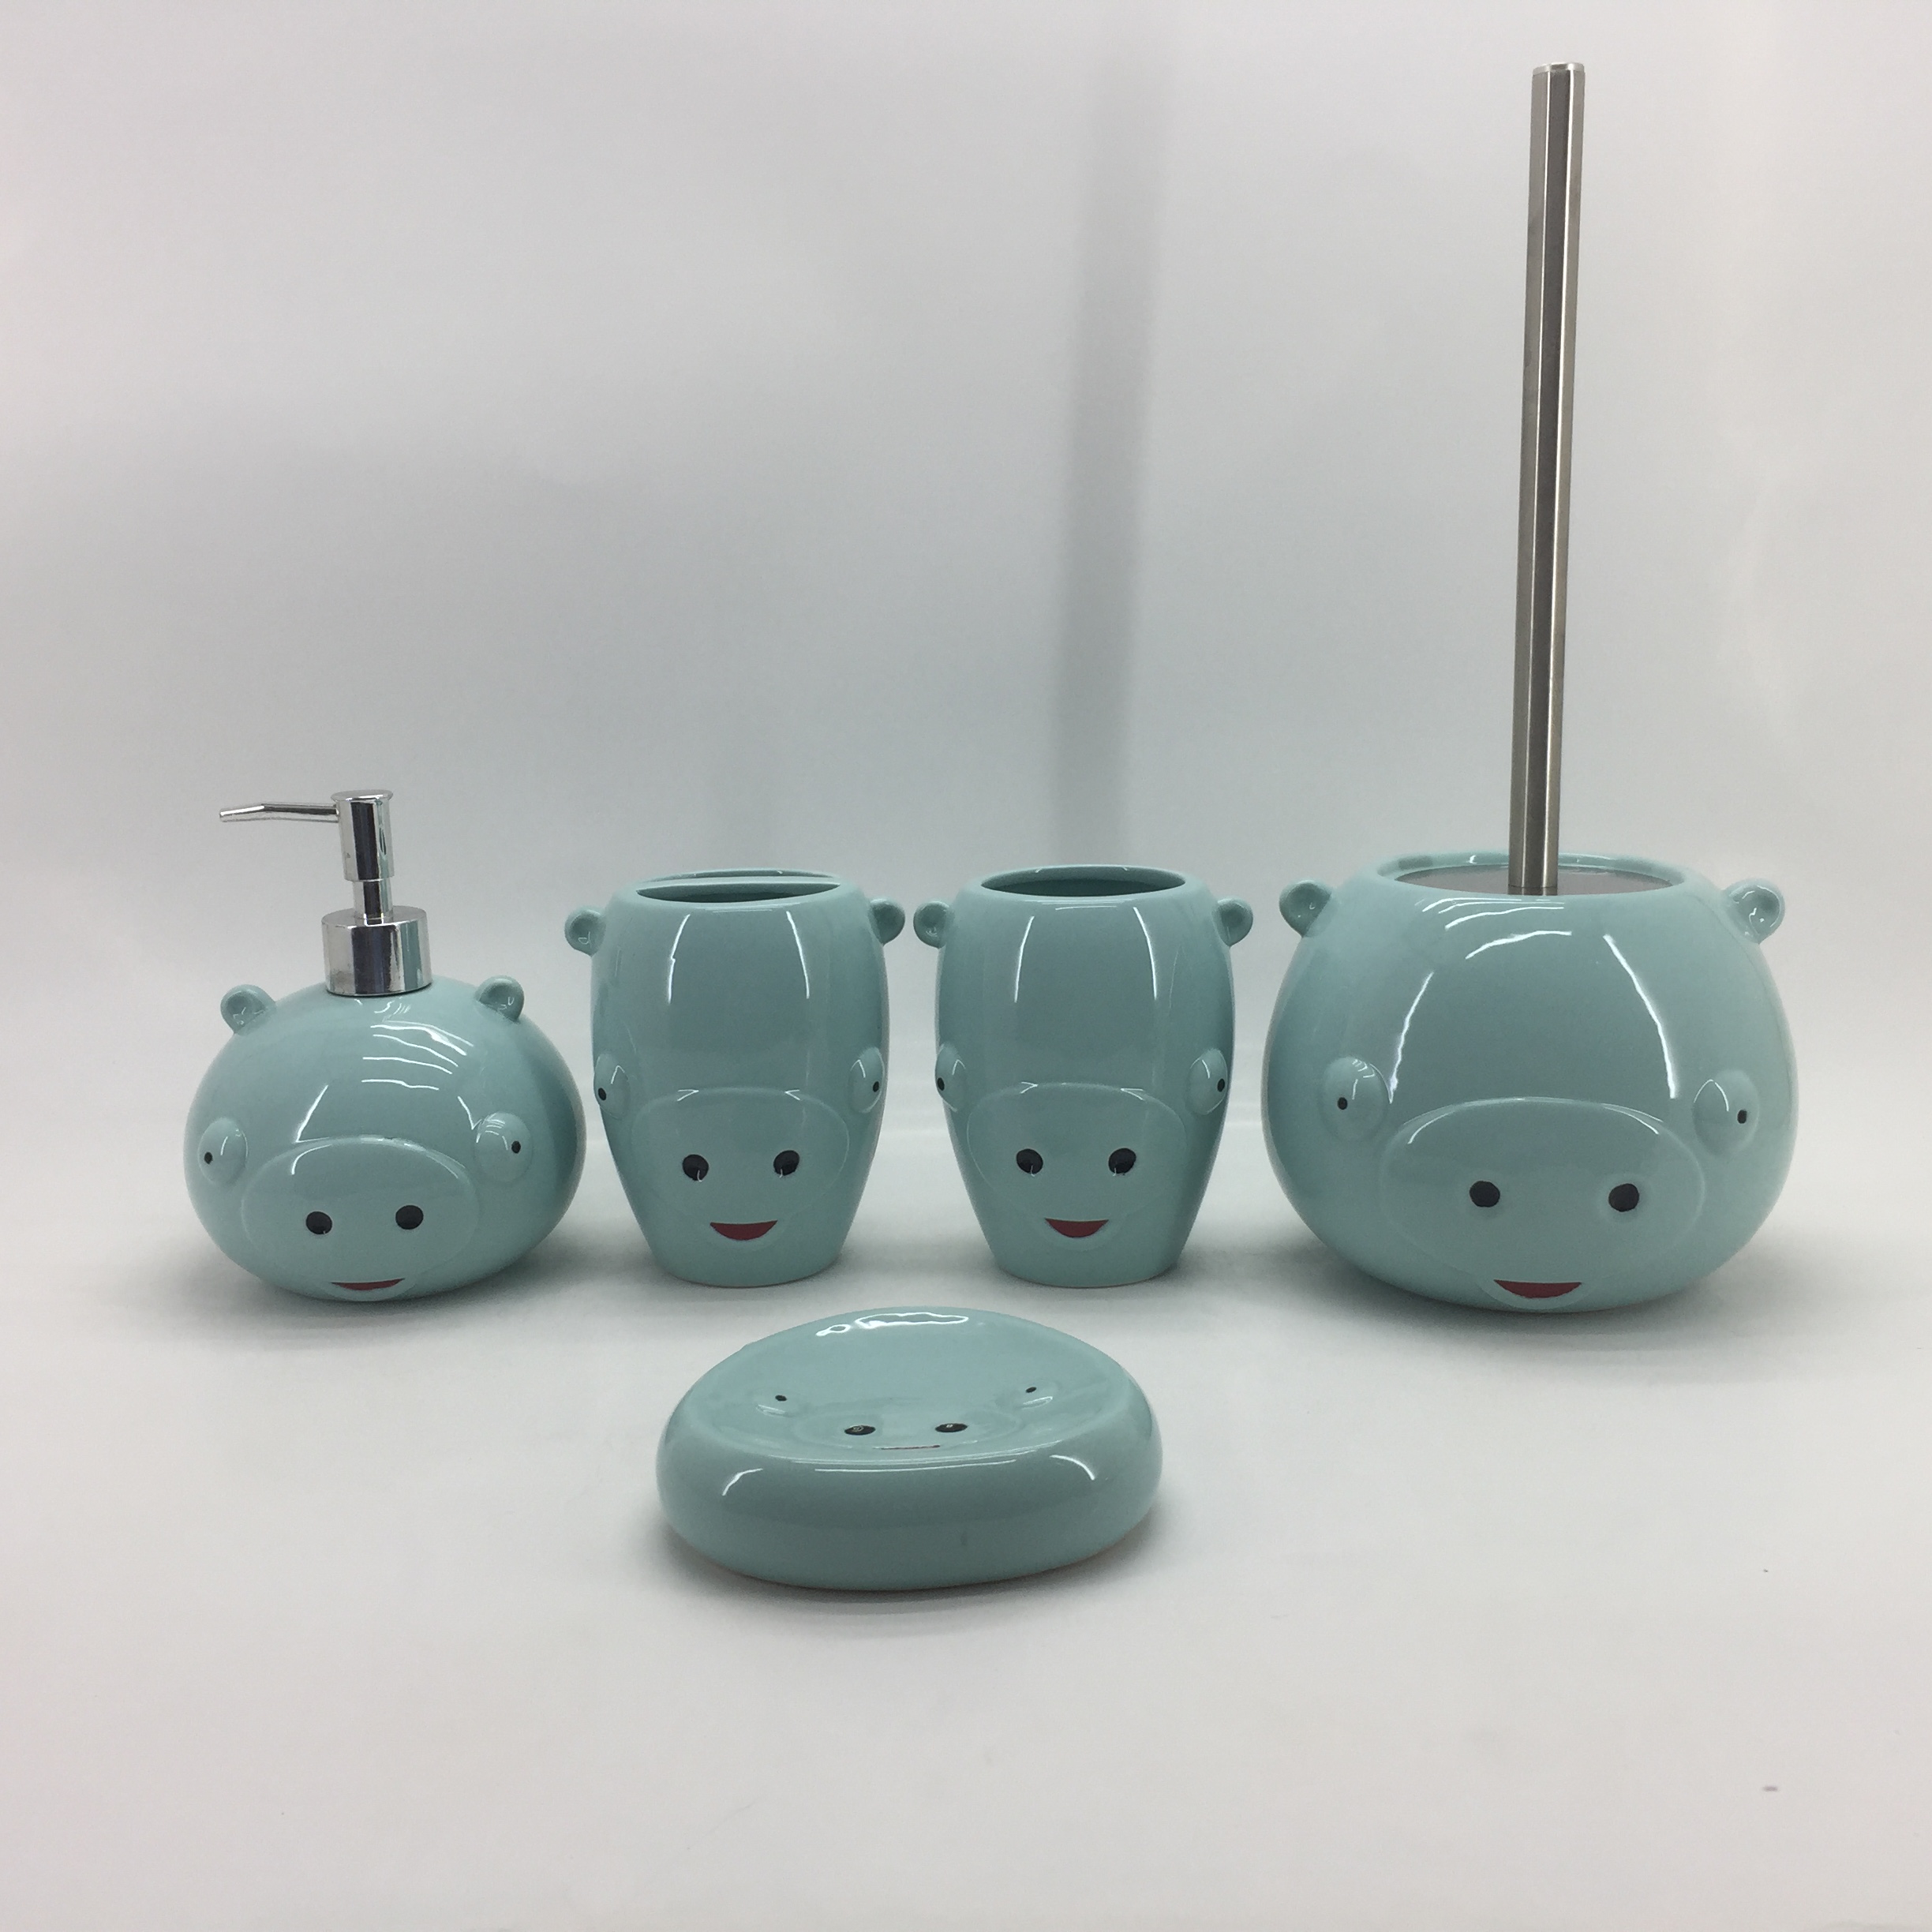 Animal Ceramic Toilet Set Blue Pigs Bathroom Accessories Set